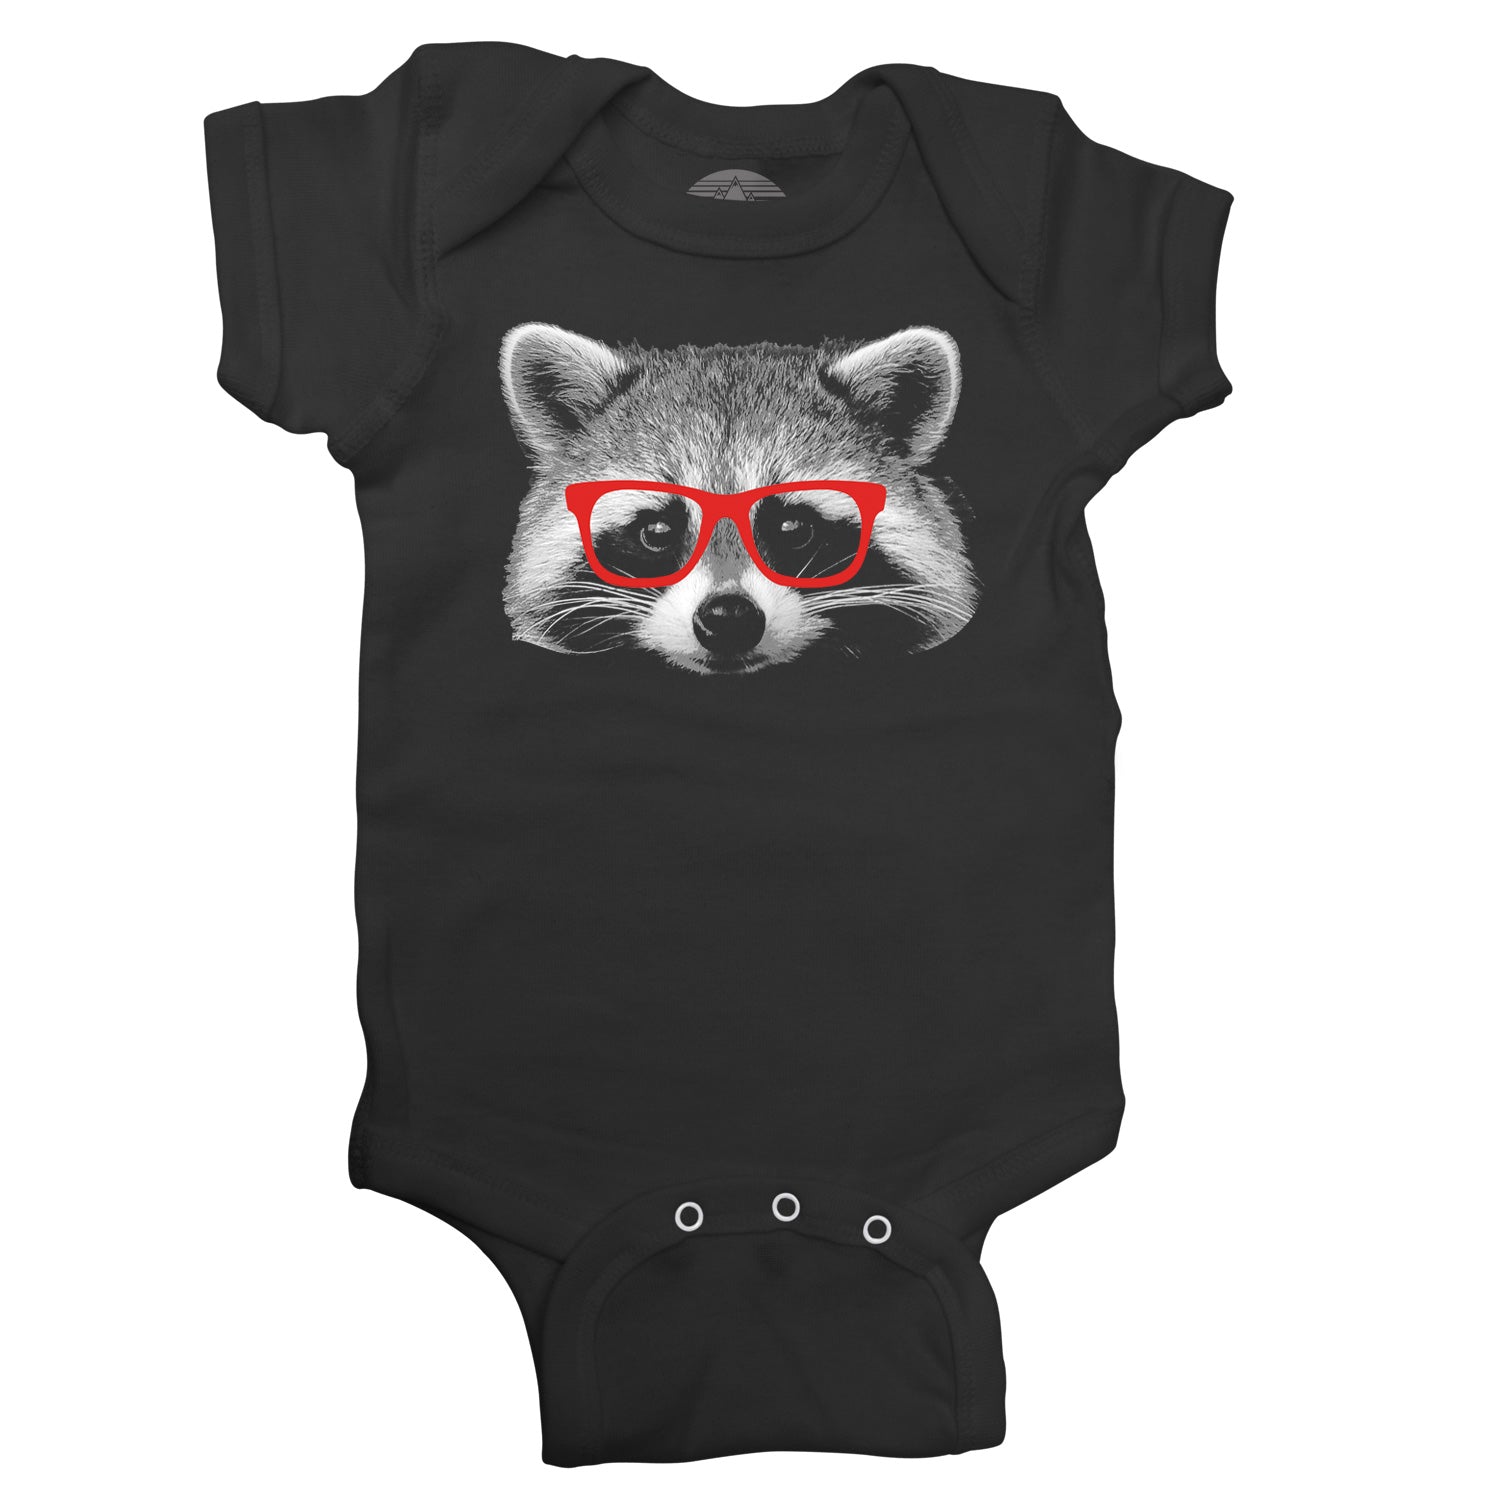 Glasses on a Raccoon Infant Bodysuit - Unisex Fit